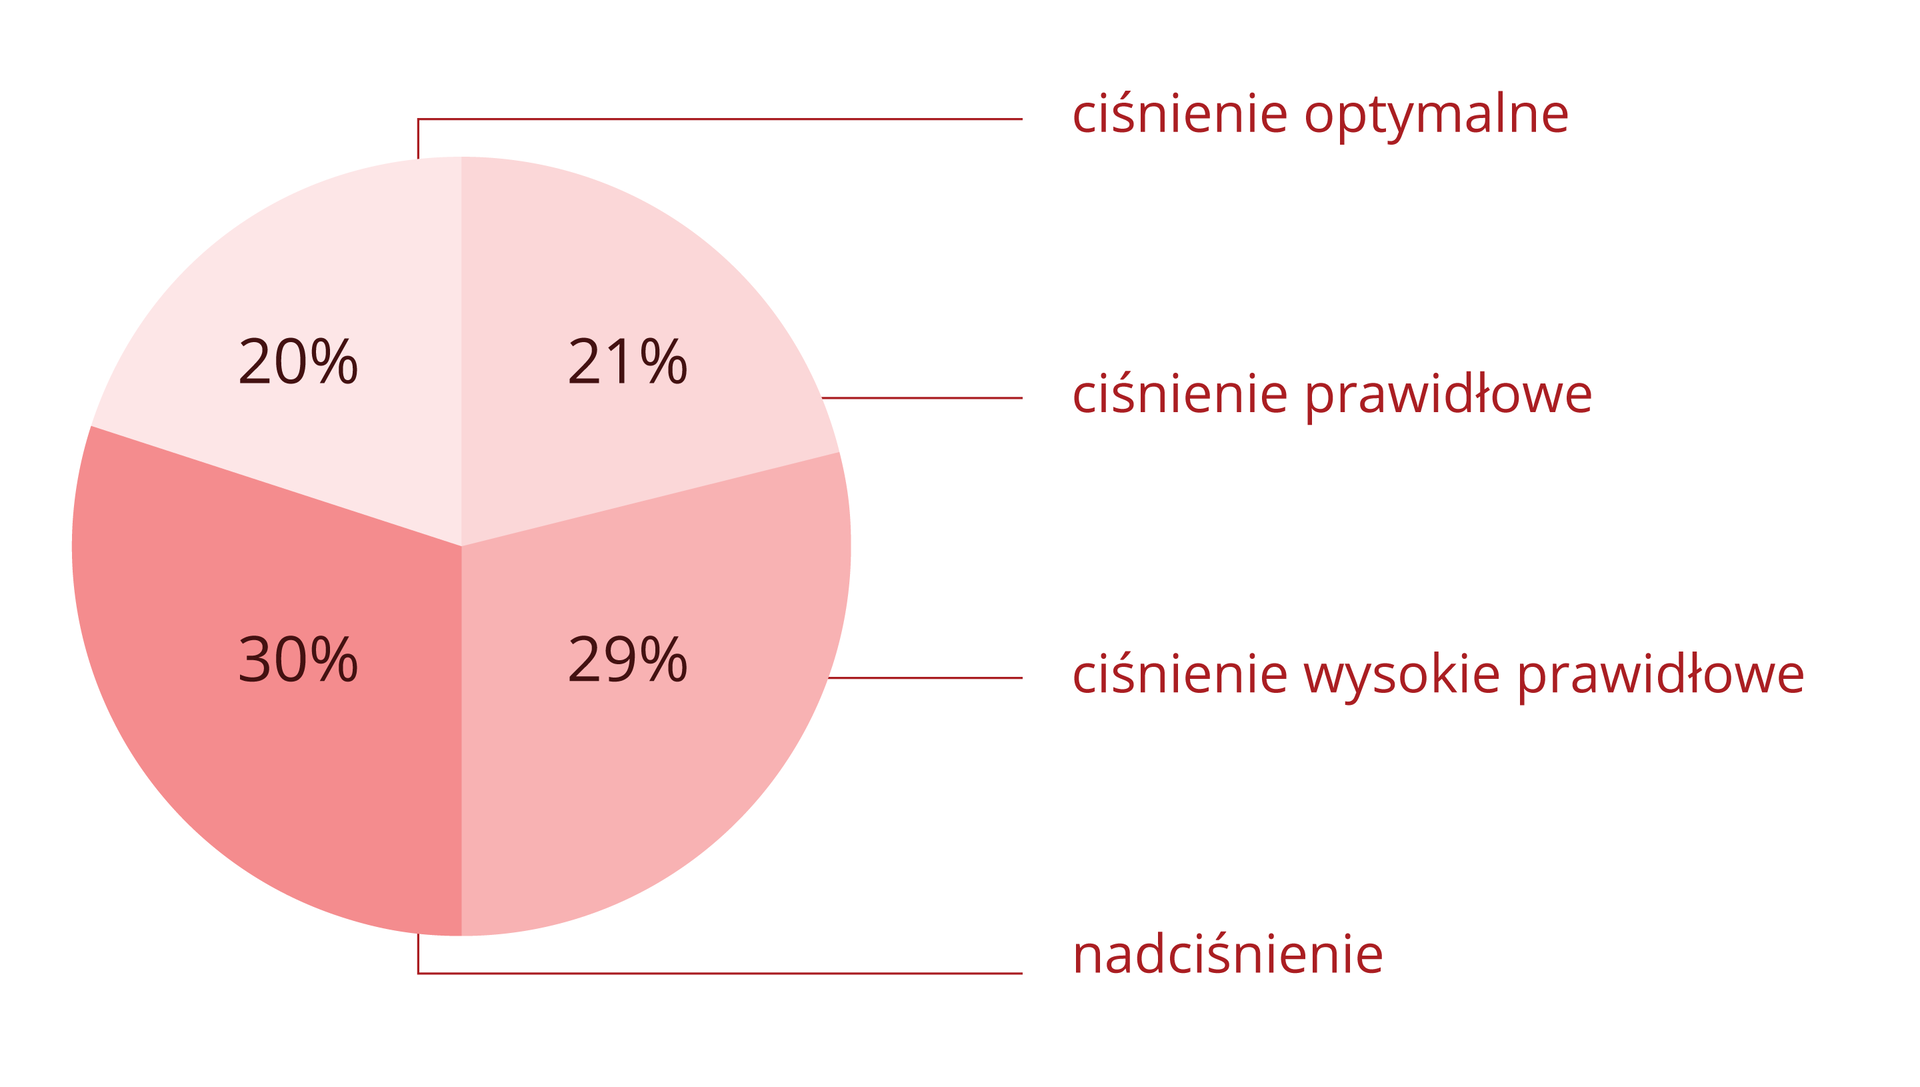 Diagram kołowy w odcieniach różowego przedstawia rozkład procentowy różnych wartości ciśnienia tętniczego u Polaków. Ciśnienie optymalne ma 20% Polaków, ciśnienie prawidłowe ma 21 % Polaków, ciśnienie wysokie prawidłowe ma 29 % Polaków, a nadciśnienie ma 30 % Polaków.